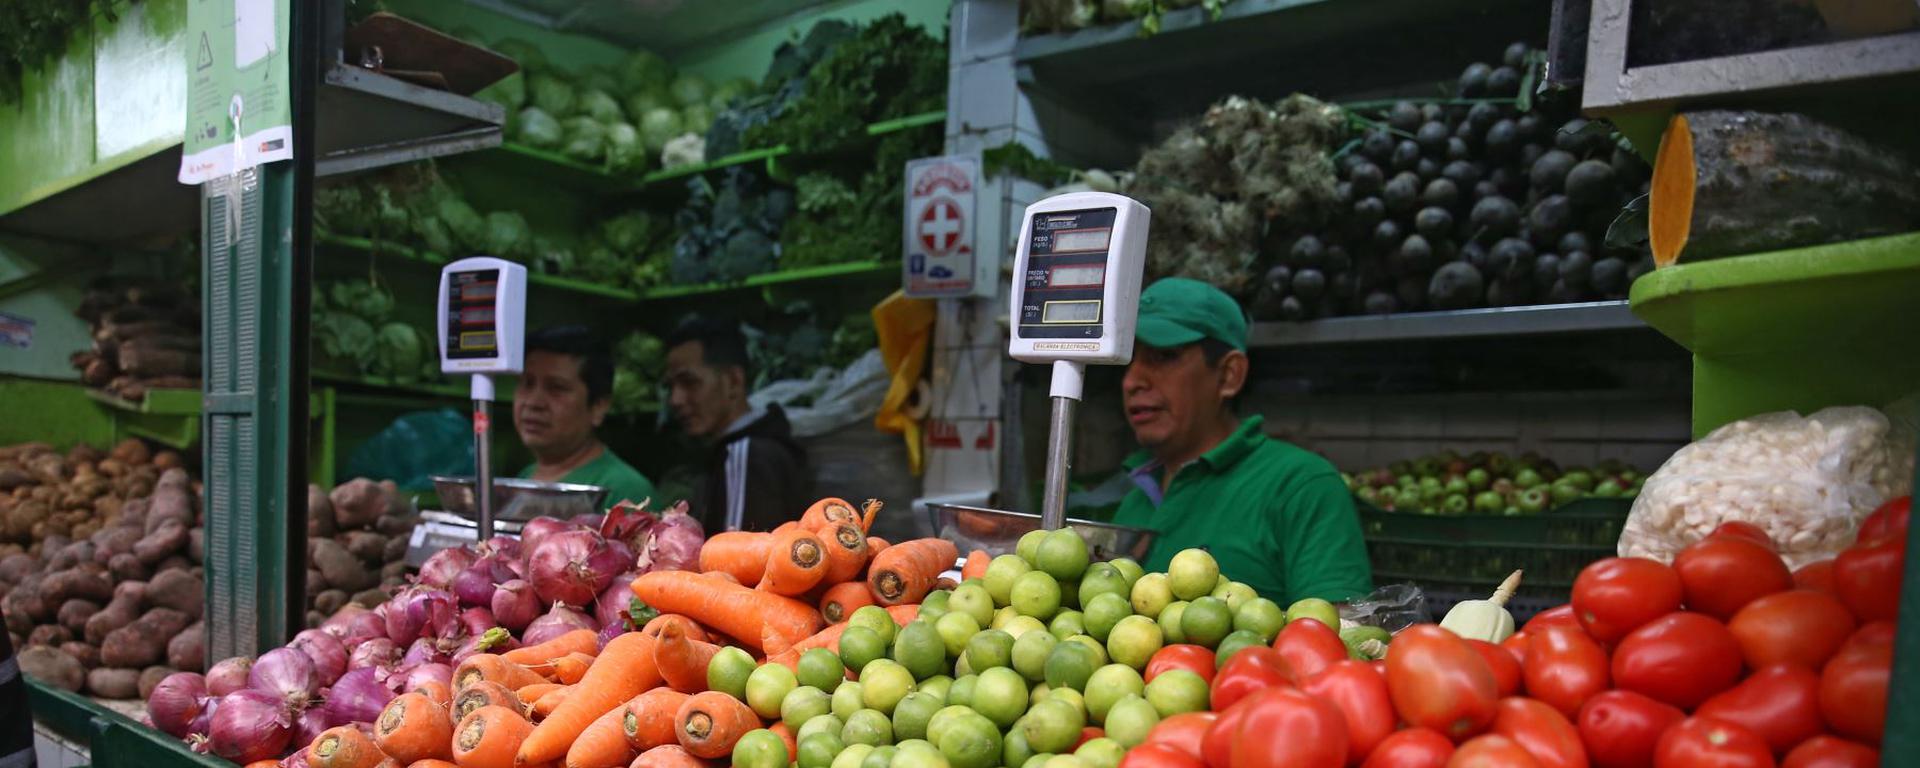 Inflación bajó en abril, ¿se verá un descenso en los precios de alimentos?